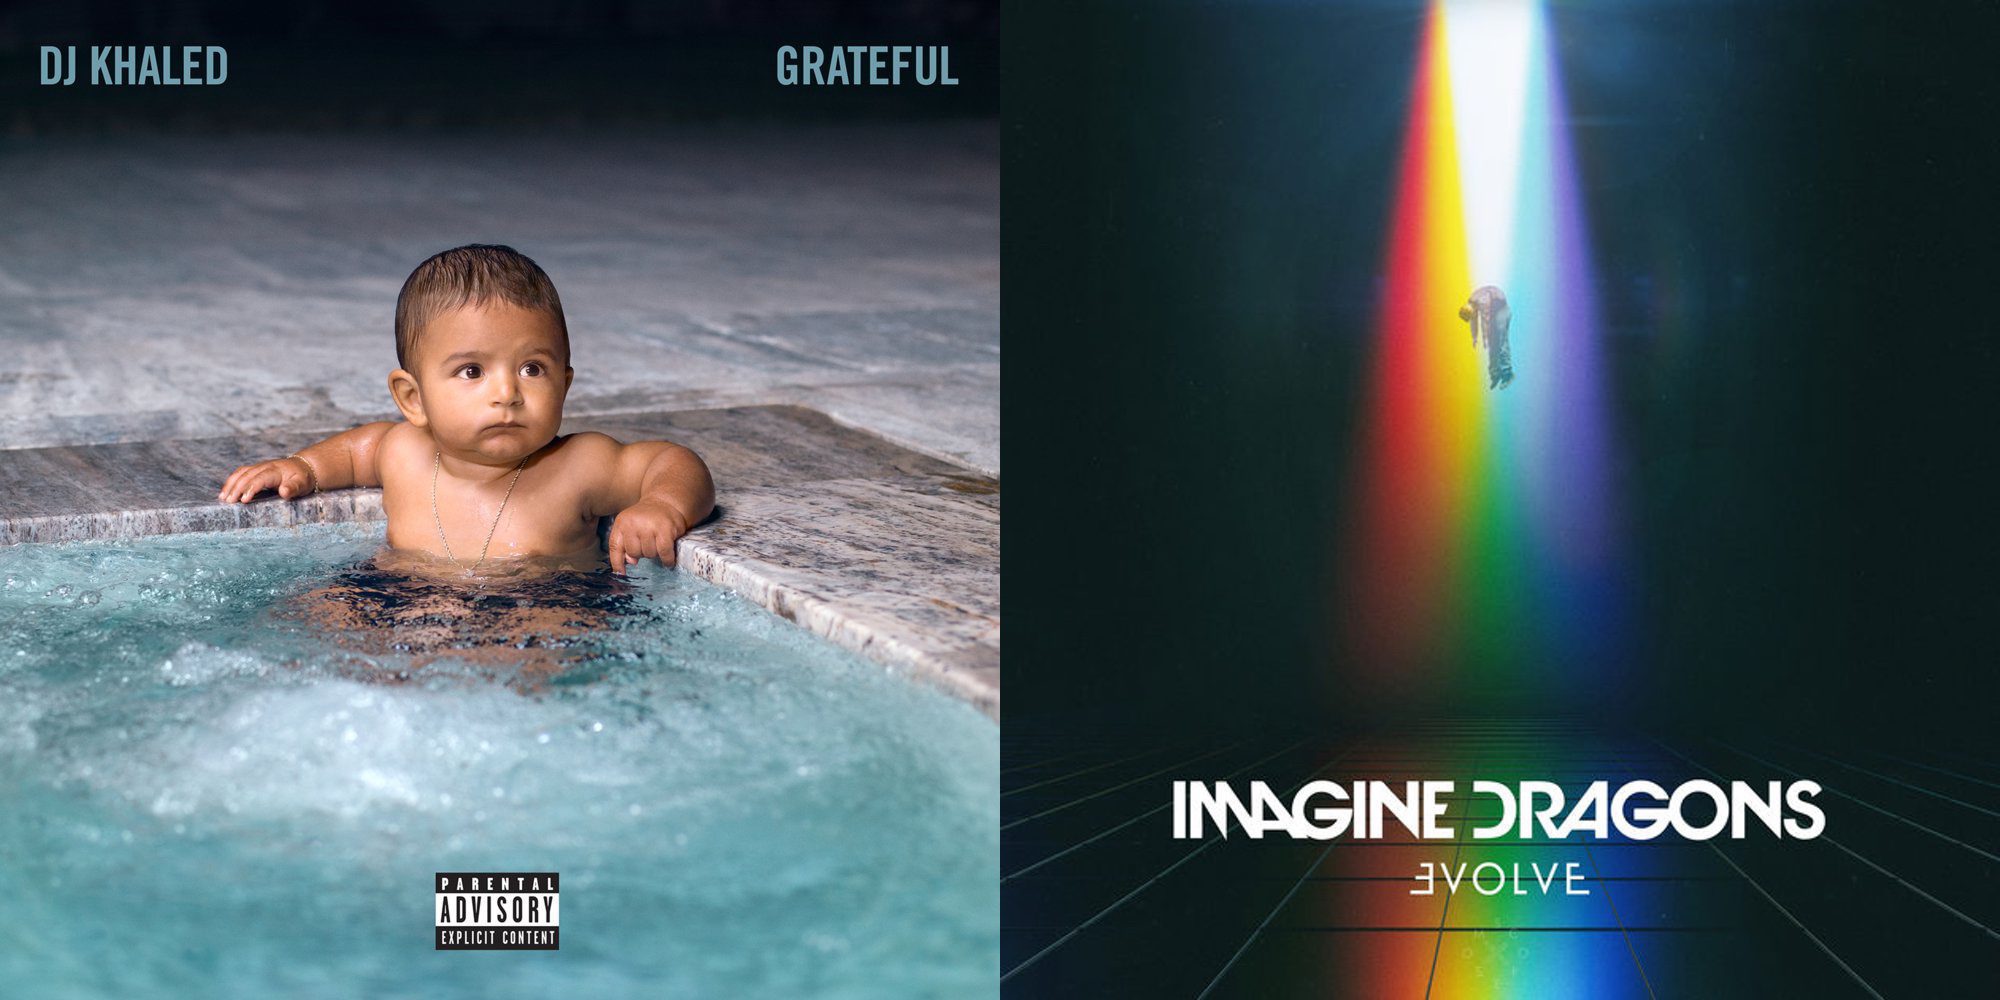 El nuevo material musical viene protagonizado por DJ Khaled, Imagine Dragons, Abraham Mateo y SZA